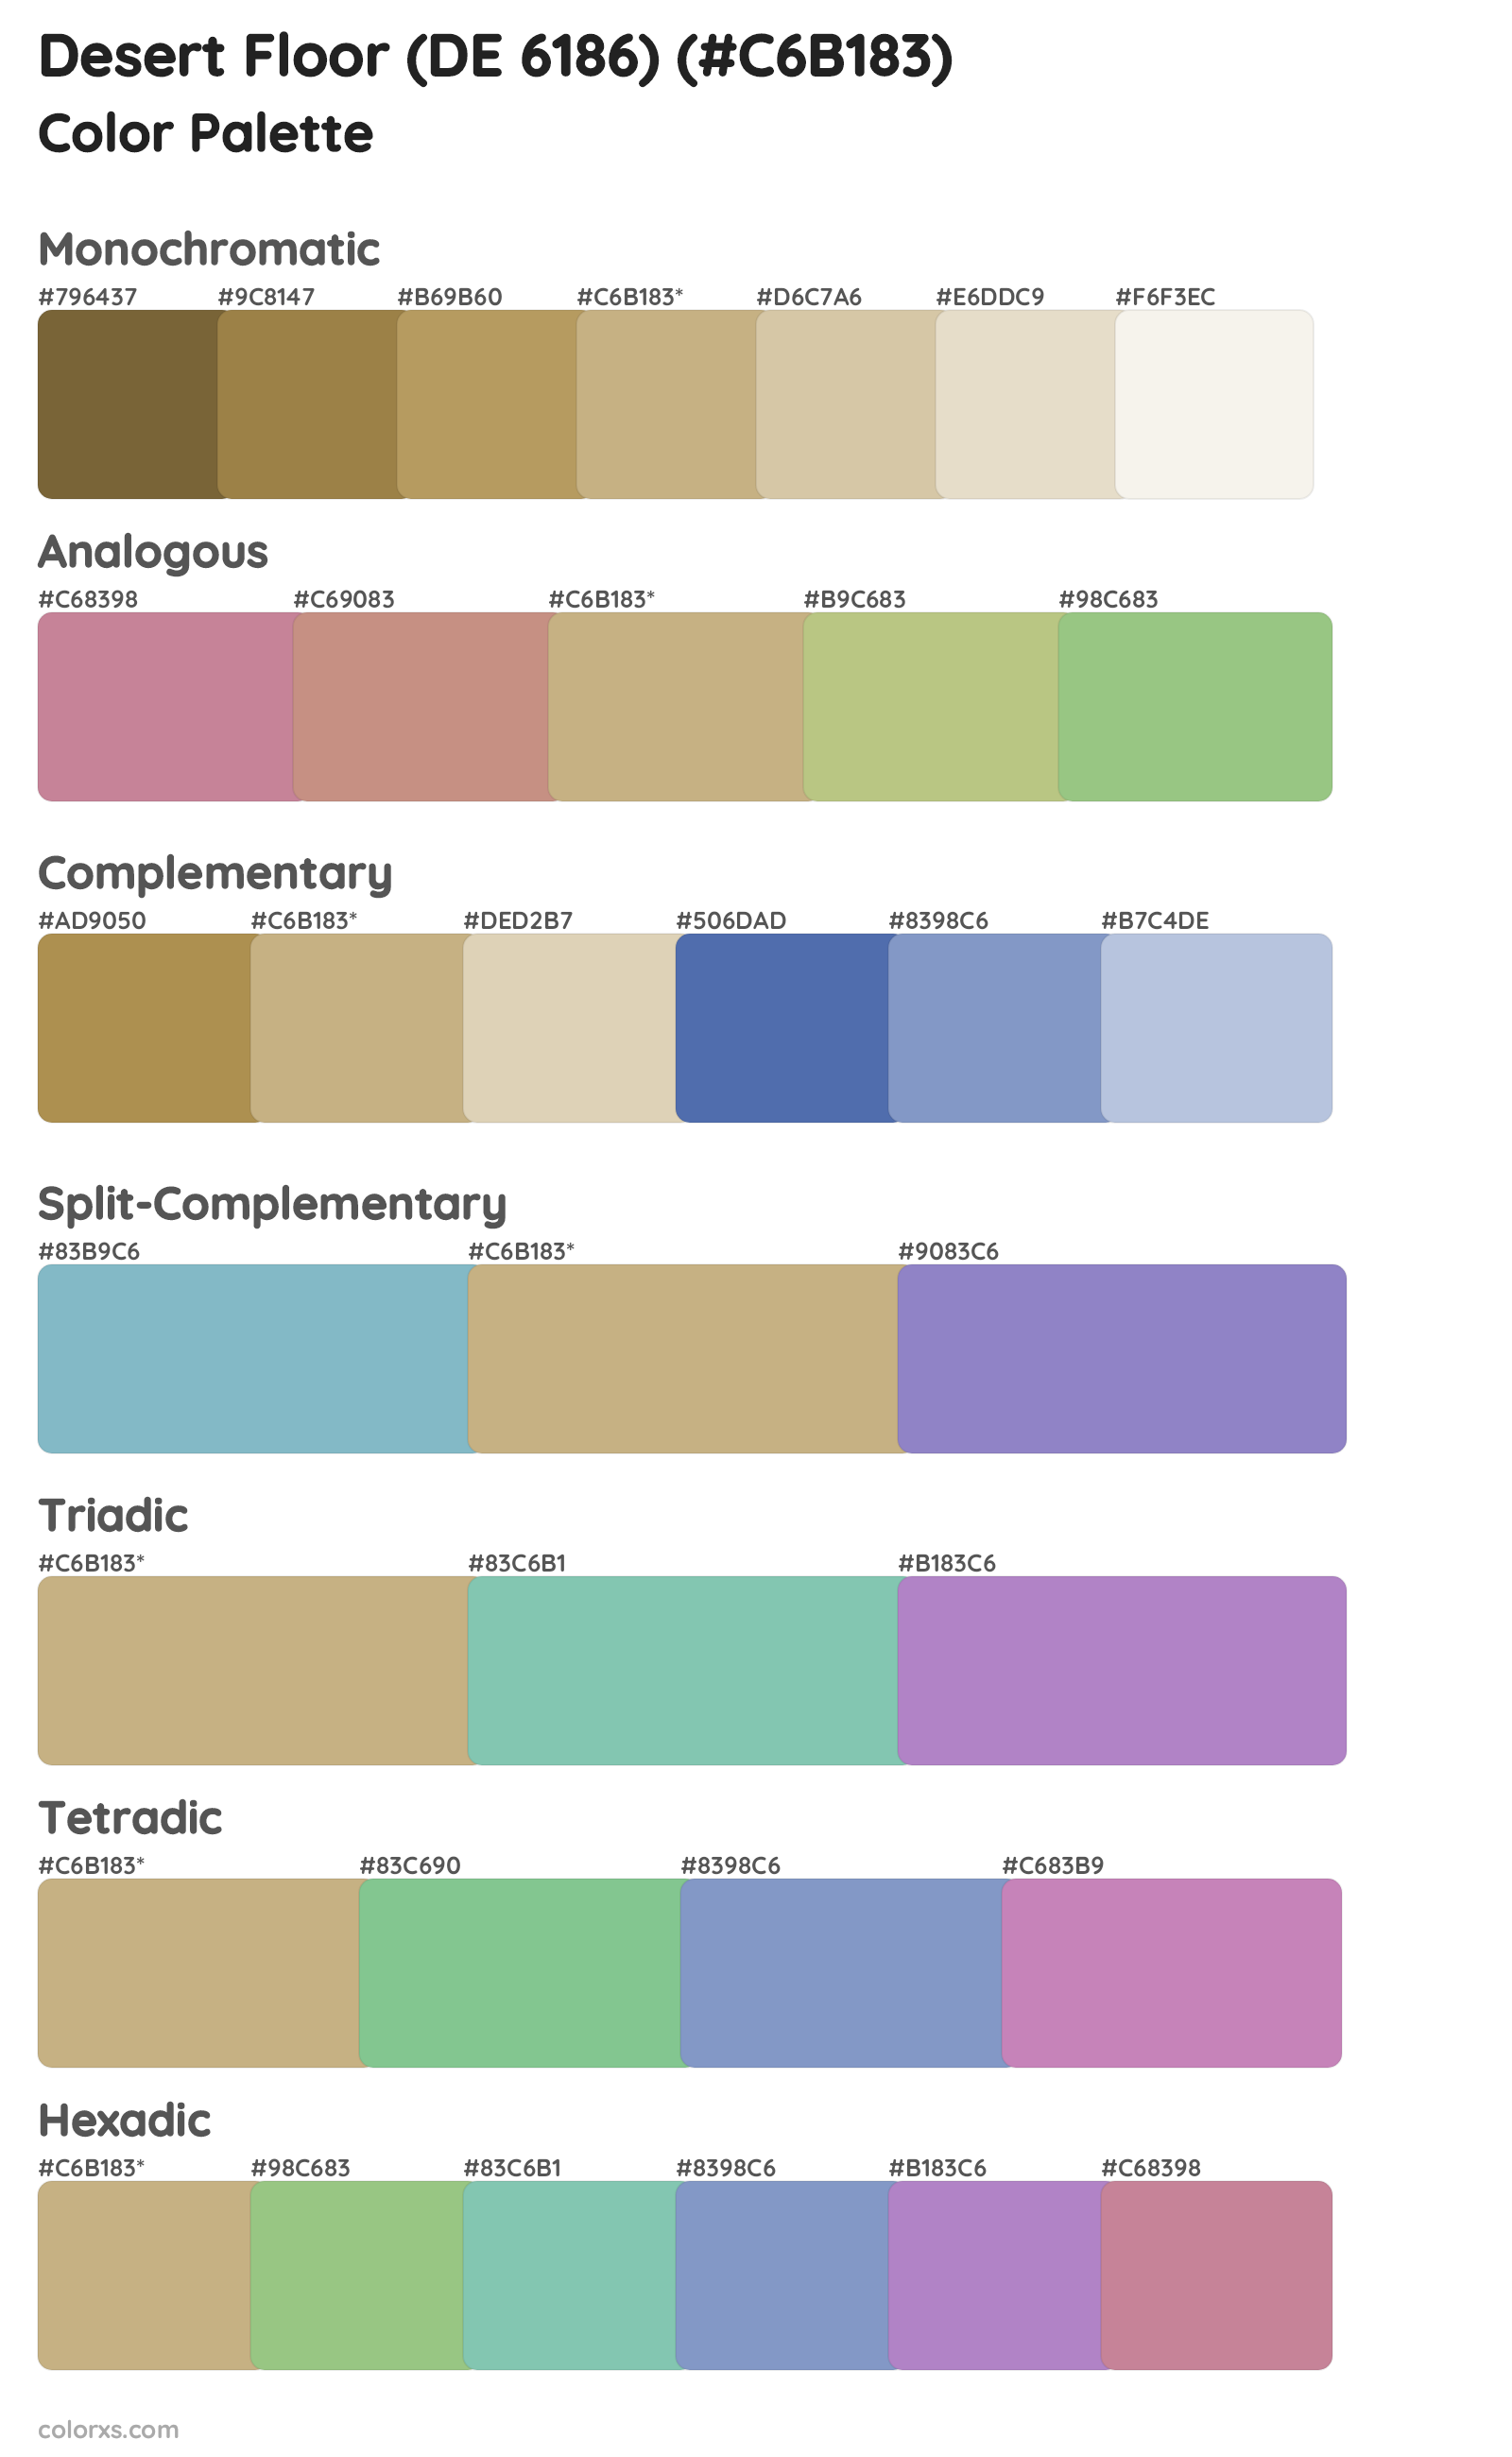 Desert Floor (DE 6186) Color Scheme Palettes